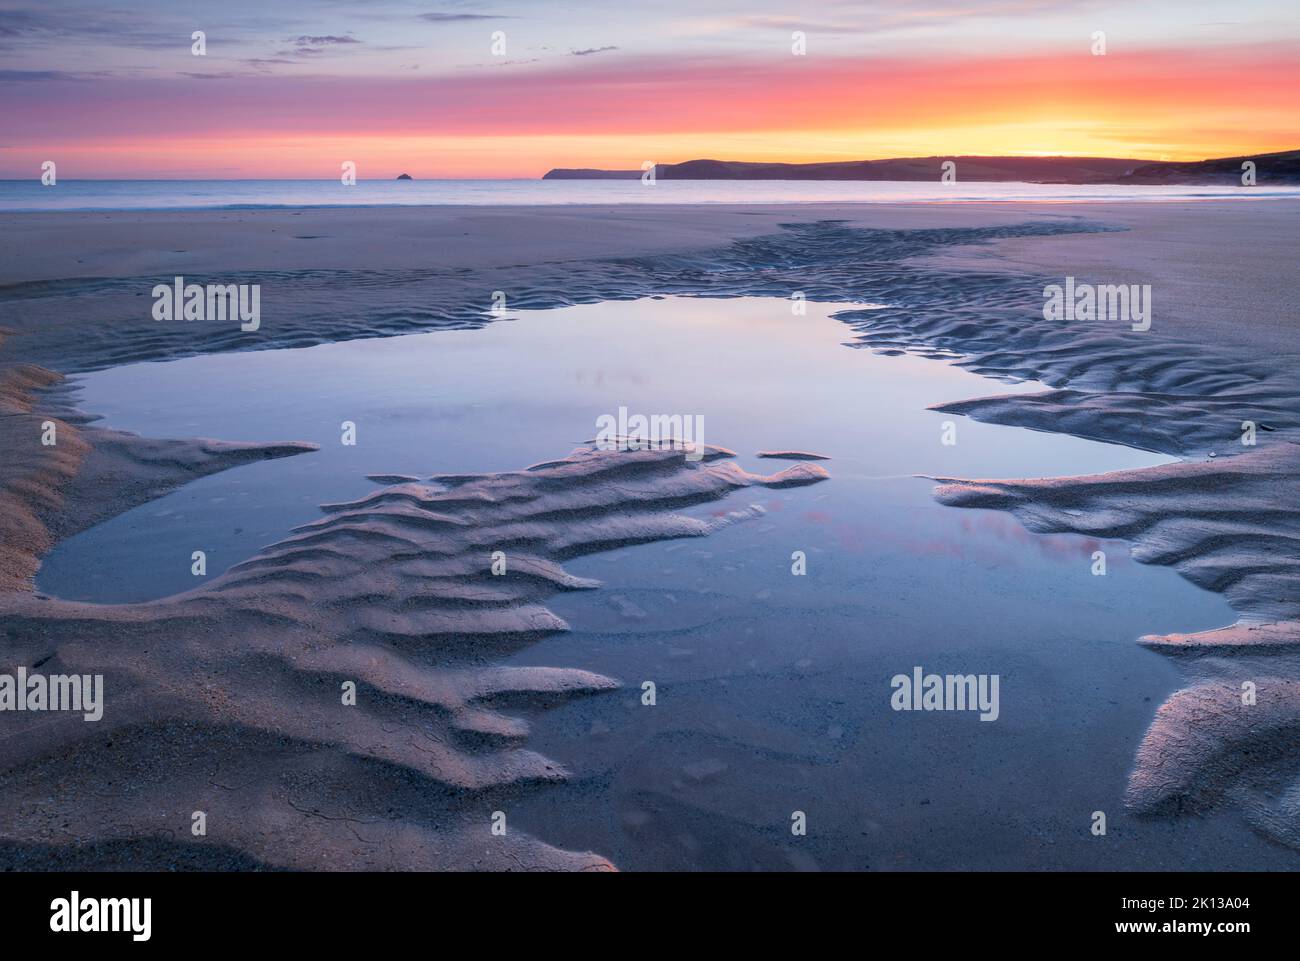 Piscines à marée sur une plage de sable déserte au lever du soleil, Harlyn Bay, Cornwall, Angleterre, Royaume-Uni, Europe Banque D'Images